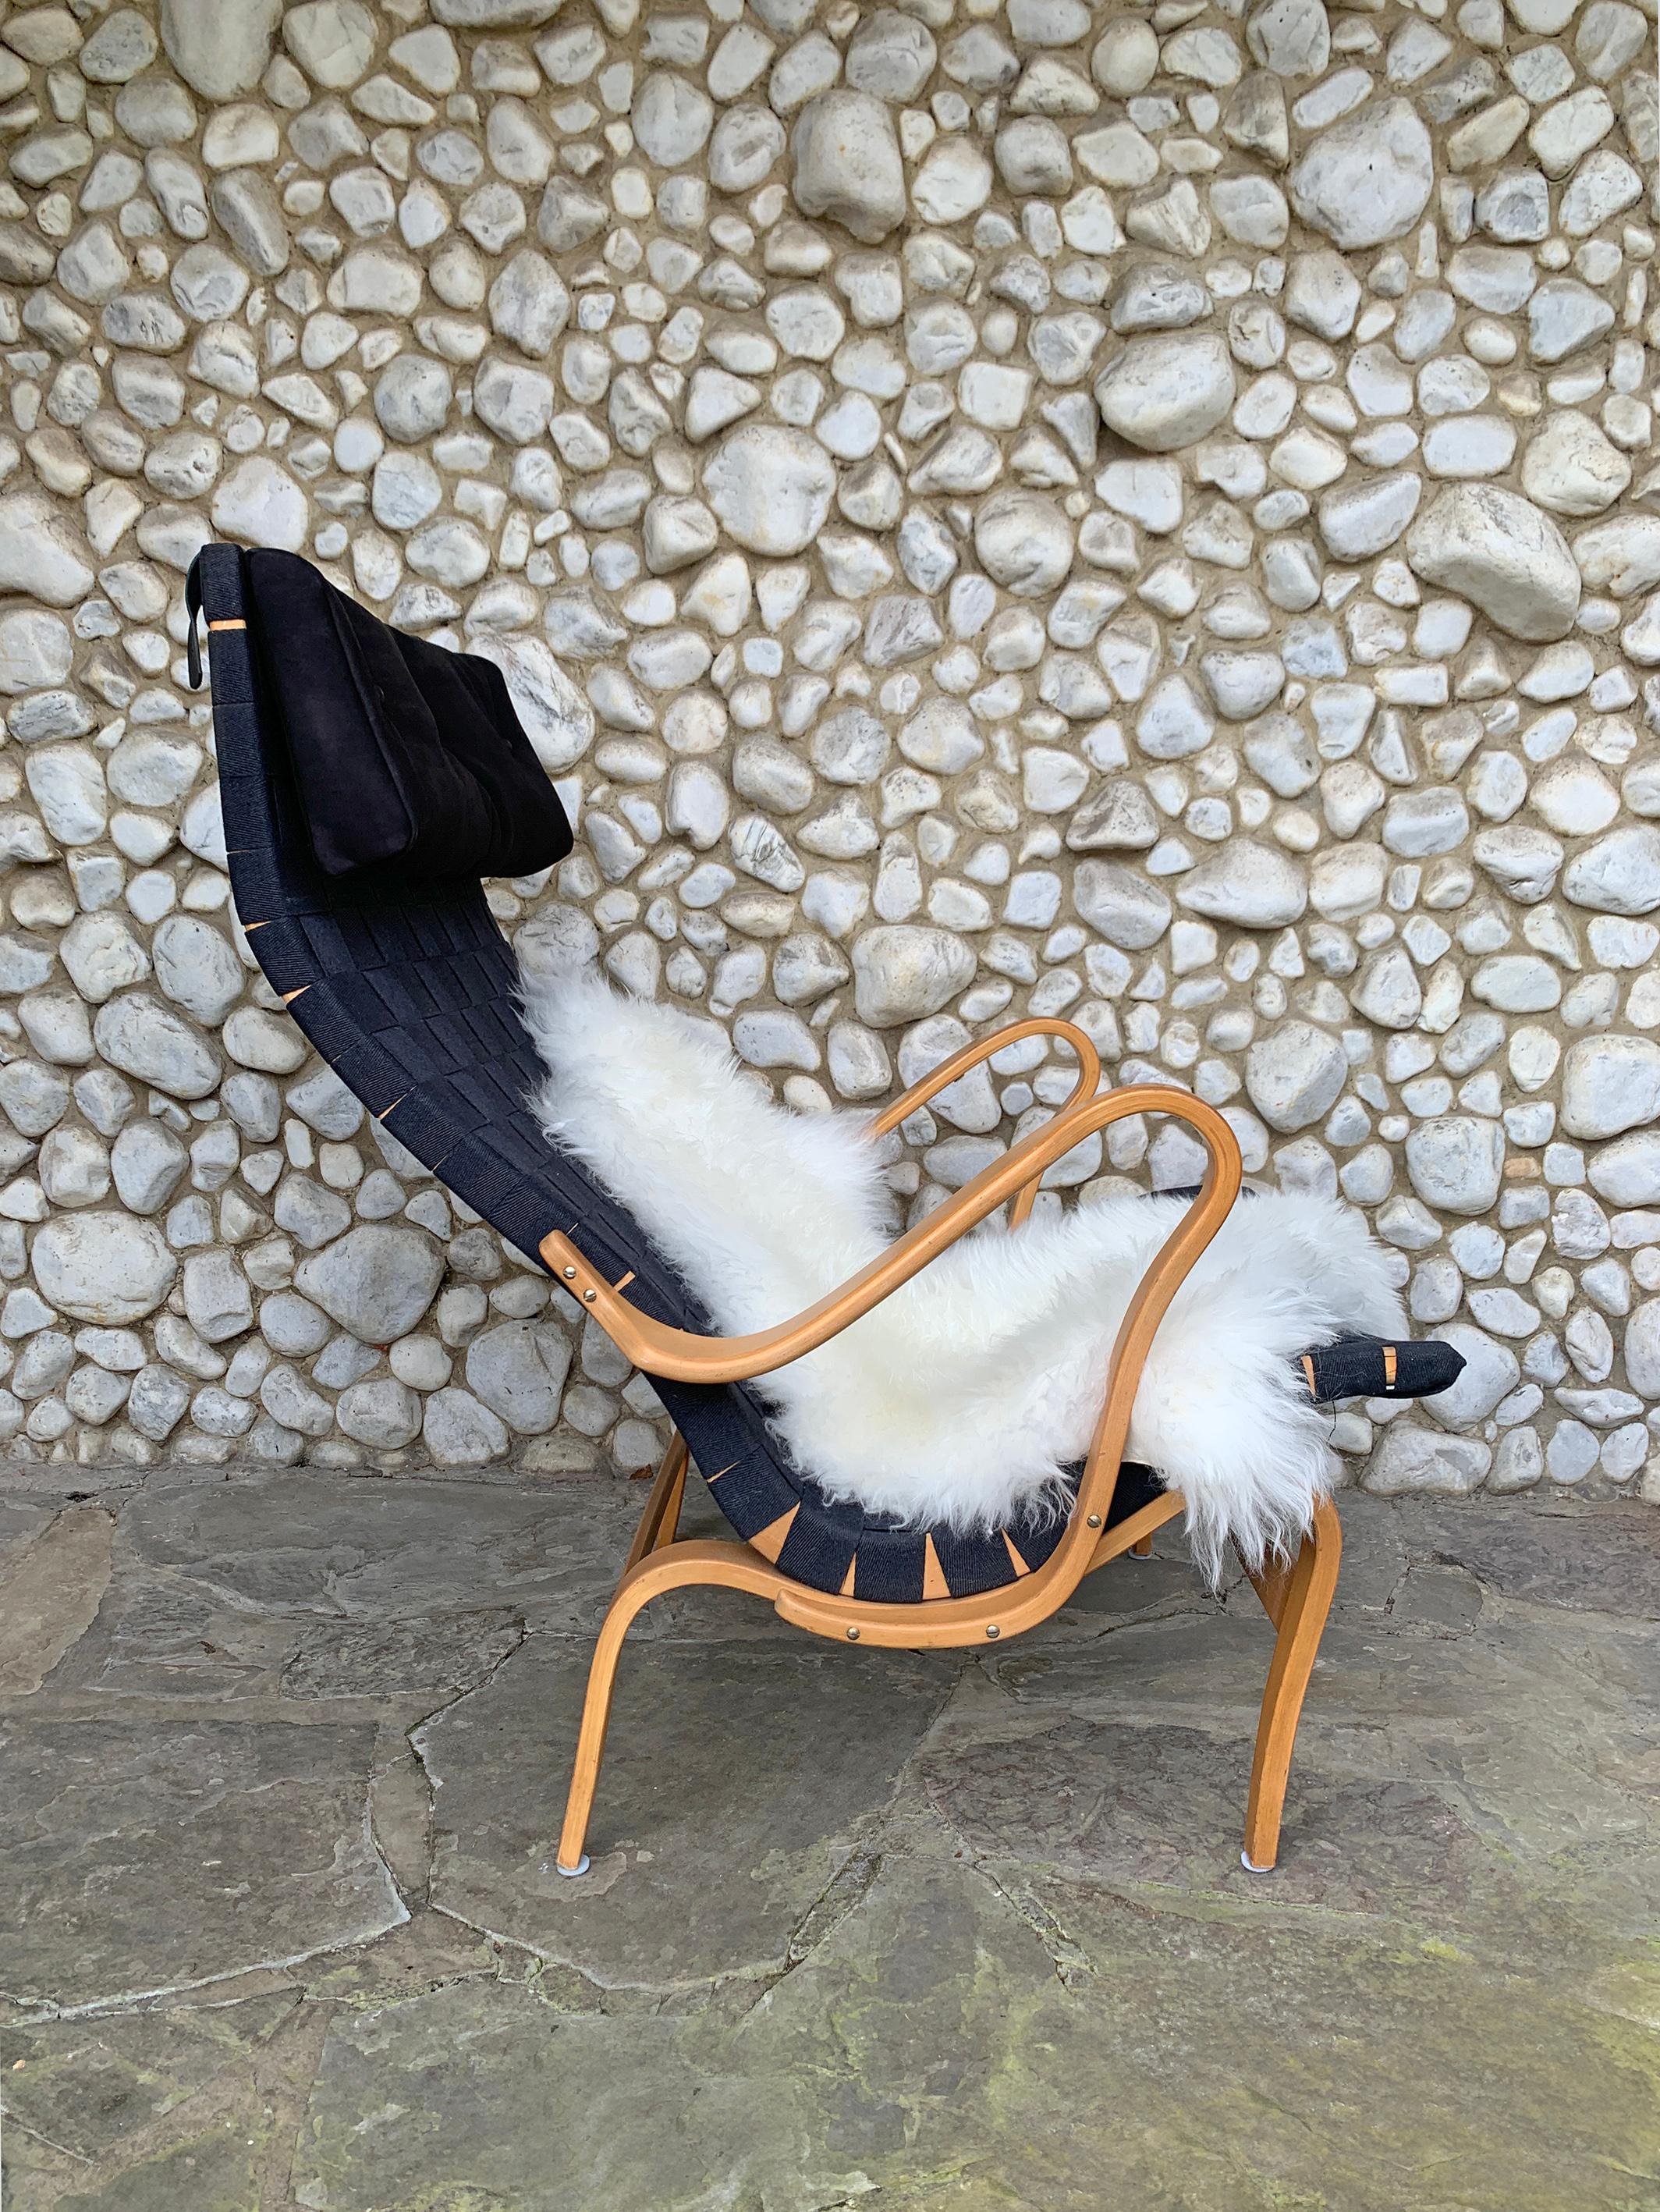 Pernilla Lounge Sessel.  Die Sitzfläche besteht aus gewebtem Gurtband, das zwischen einem Rahmen aus dampfgebogener Buche gespannt ist. Dieser Stuhl ist mit schwarzem Original-Leinwandgewebe ausgestattet, was sehr selten ist.

Im Jahr 1944 entwarf